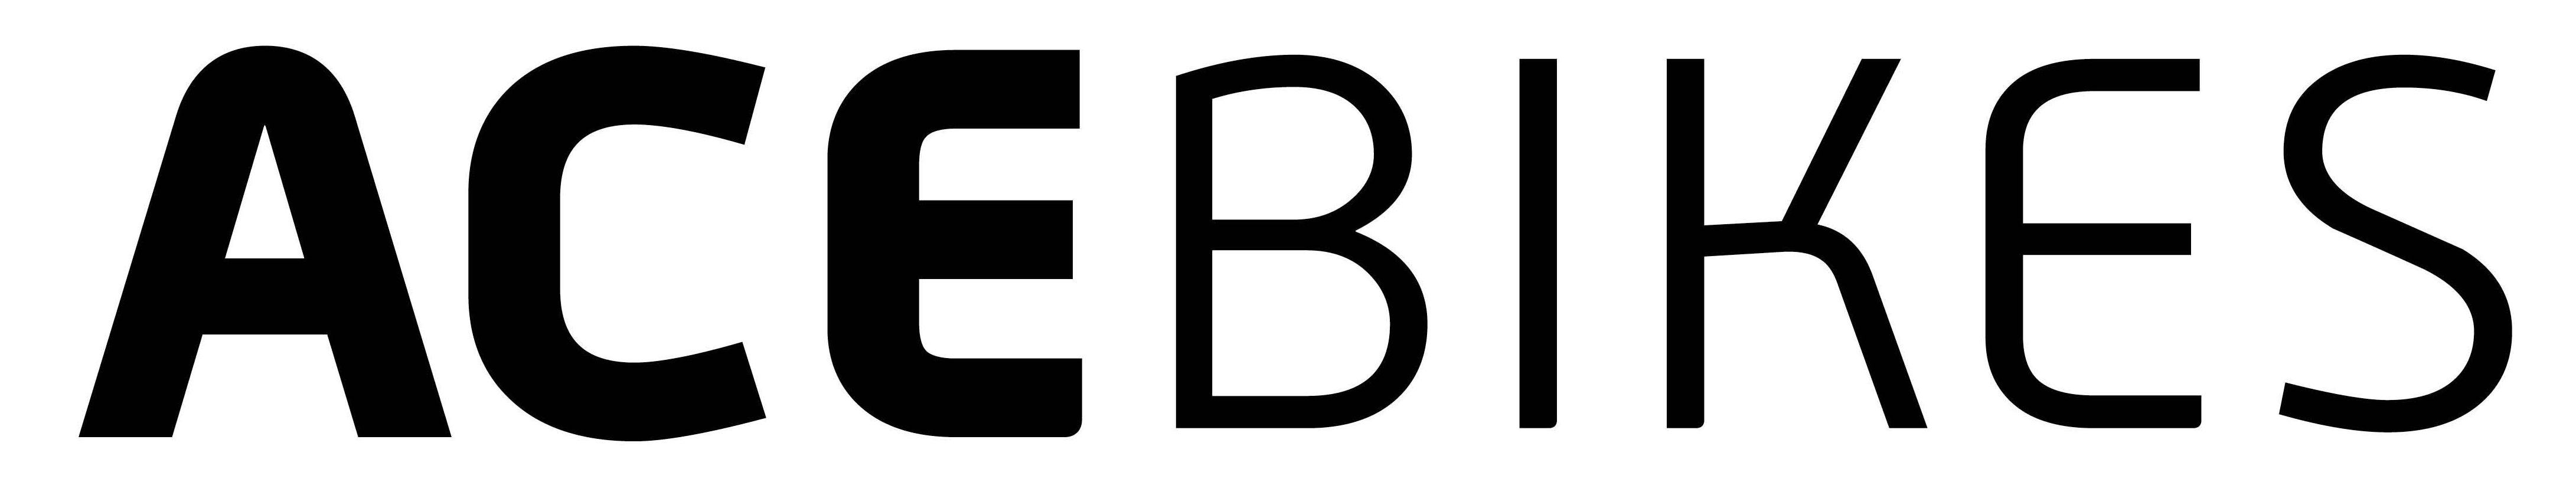 acebikes logo